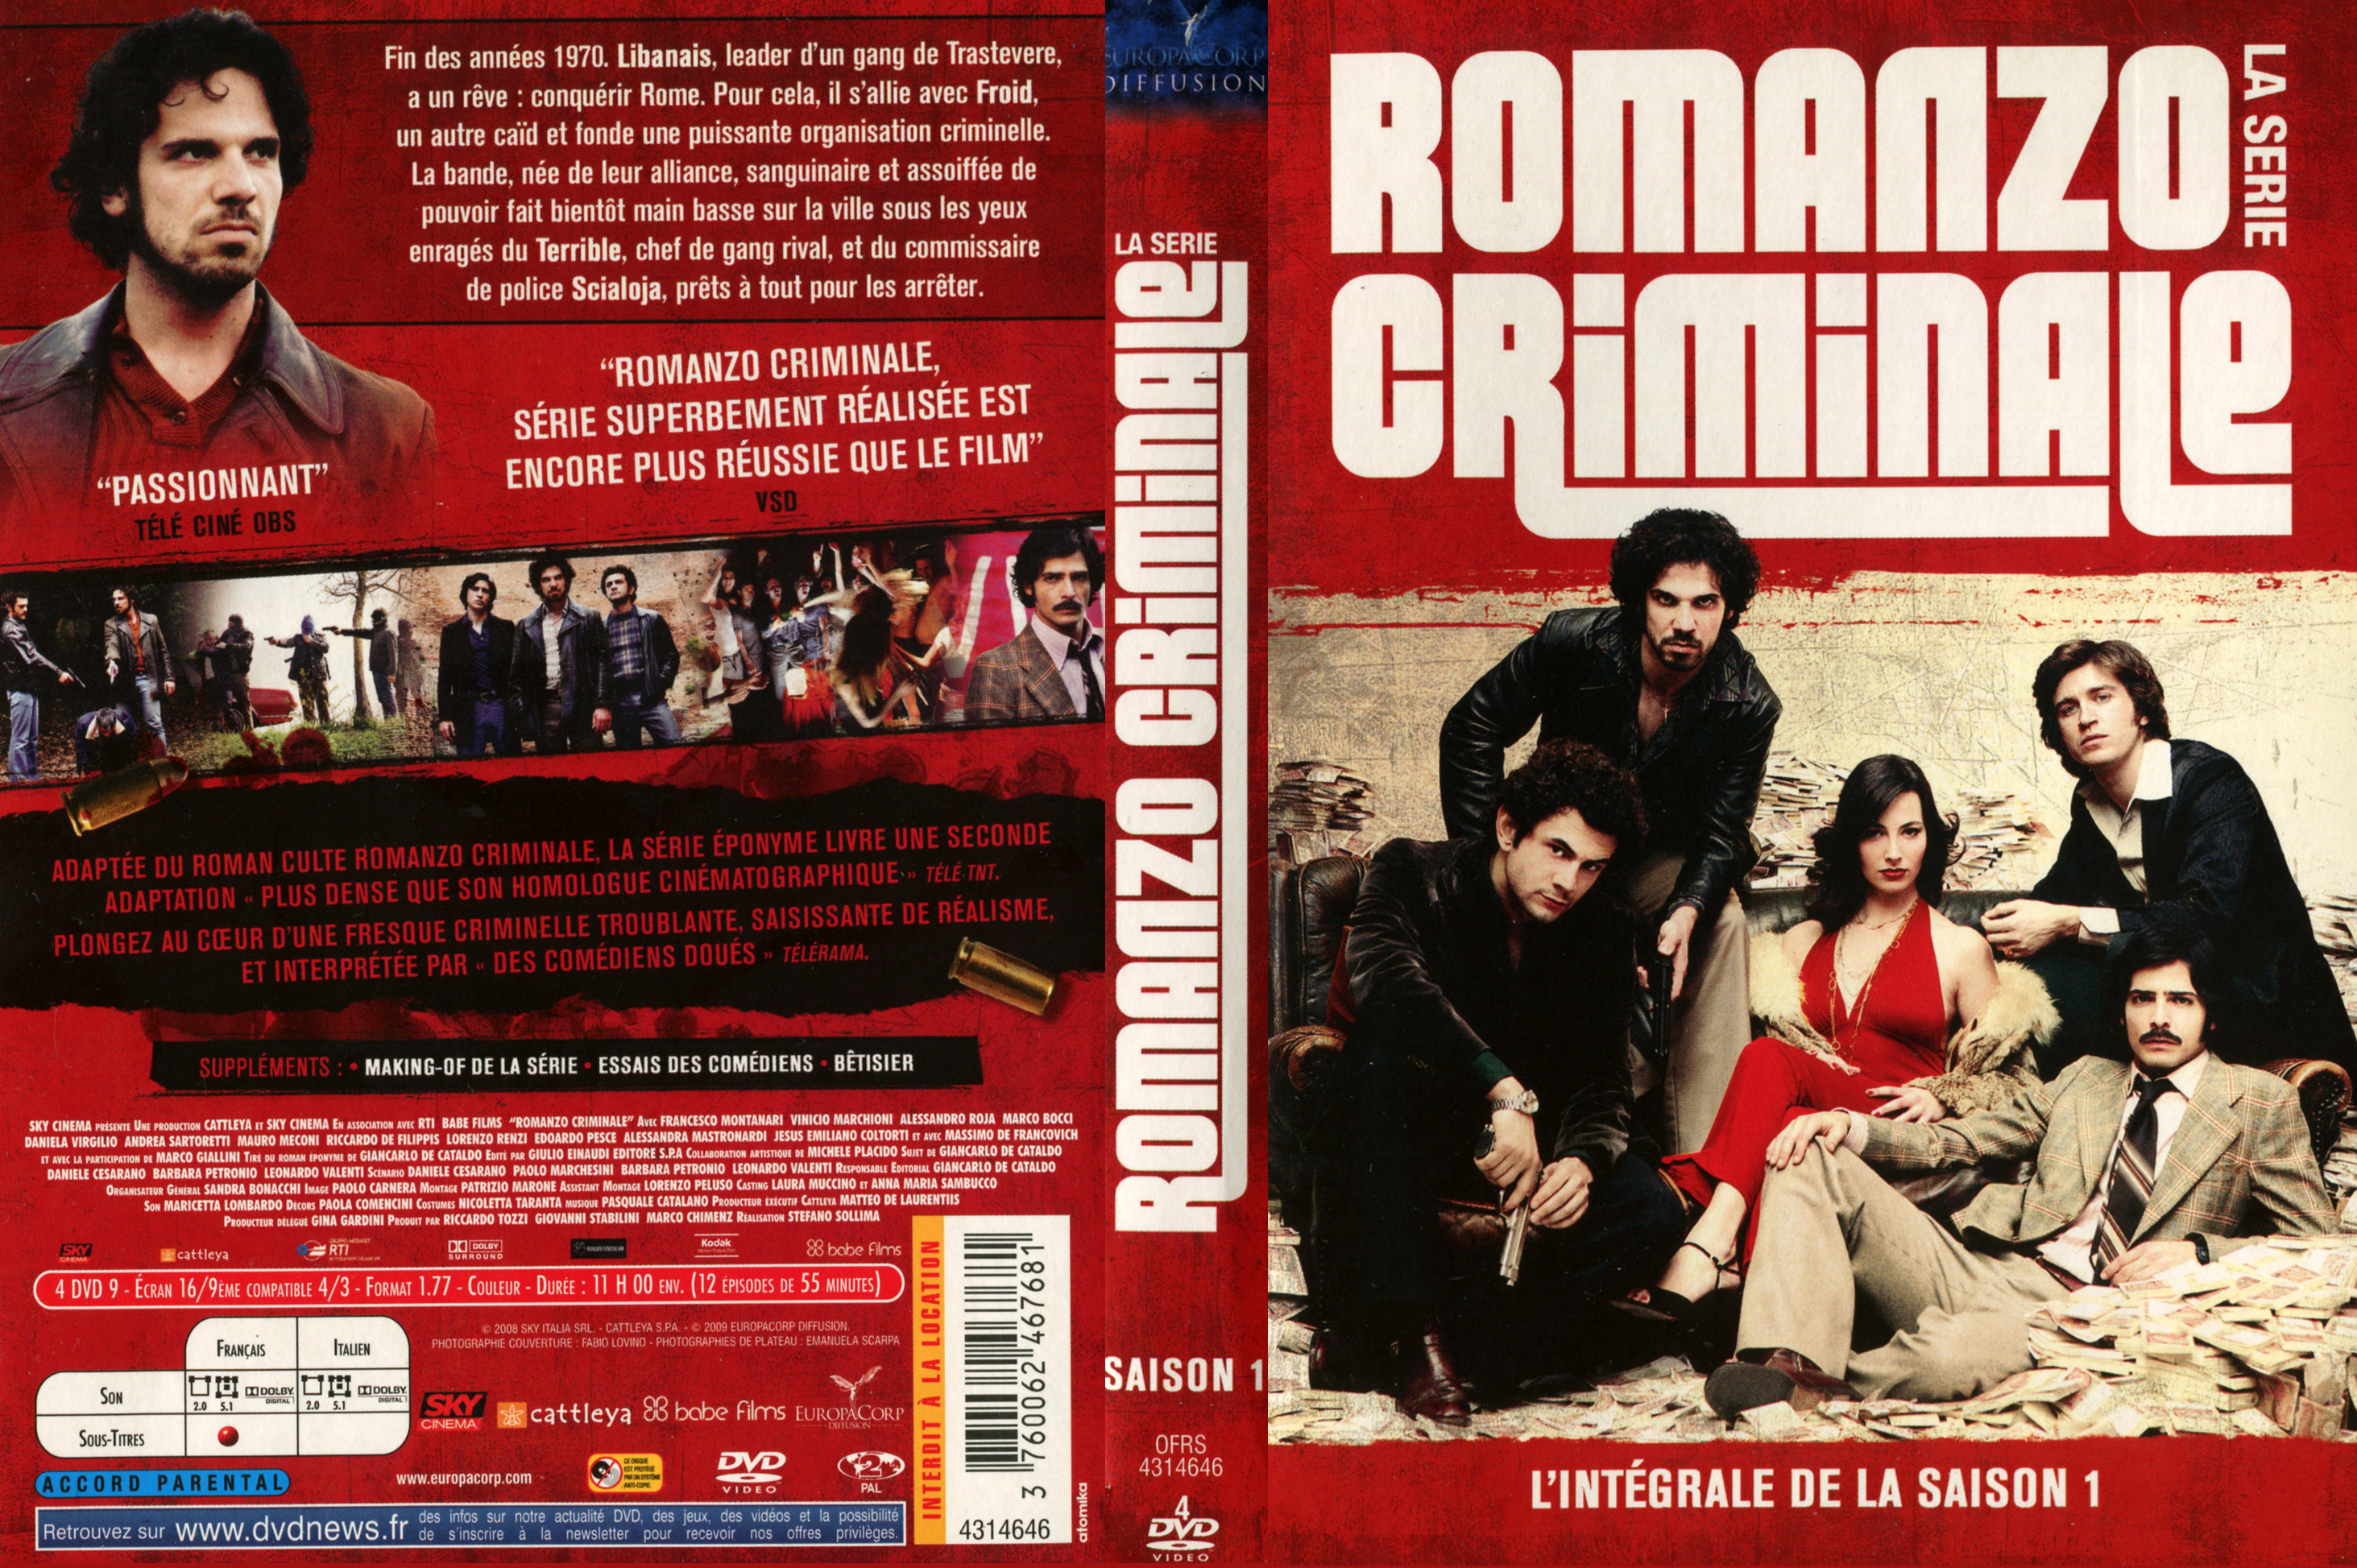 Jaquette DVD Romanzo criminale Saison 1 COFFRET